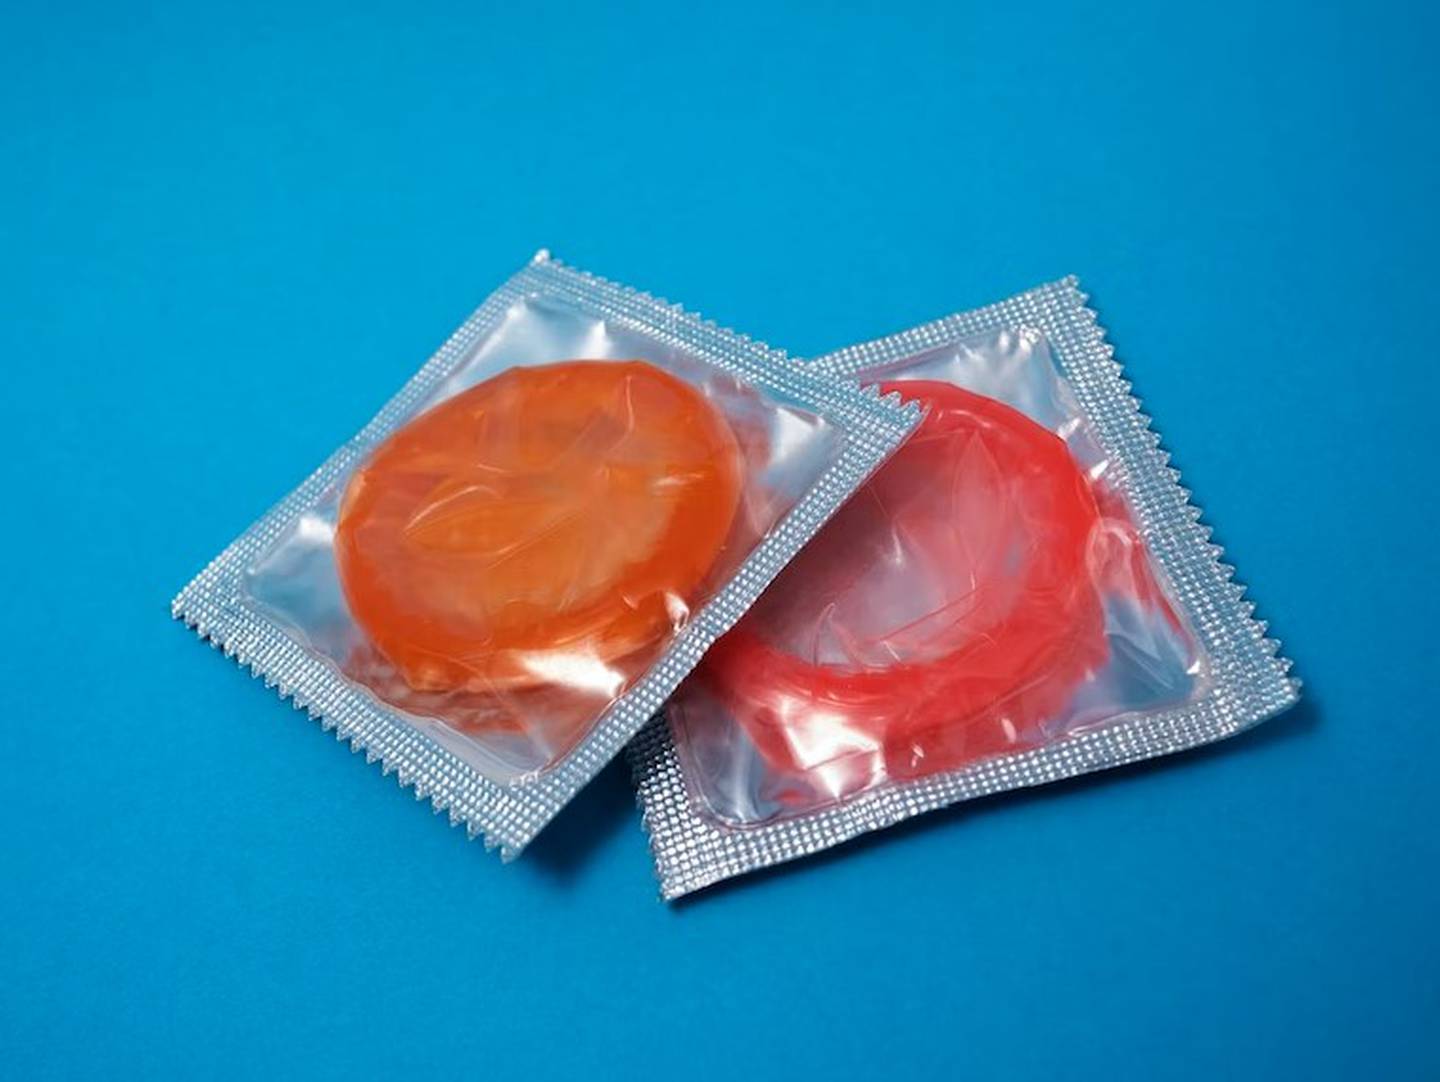 Quitarse el preservativo sin consentimiento puede ser considerado una agresión